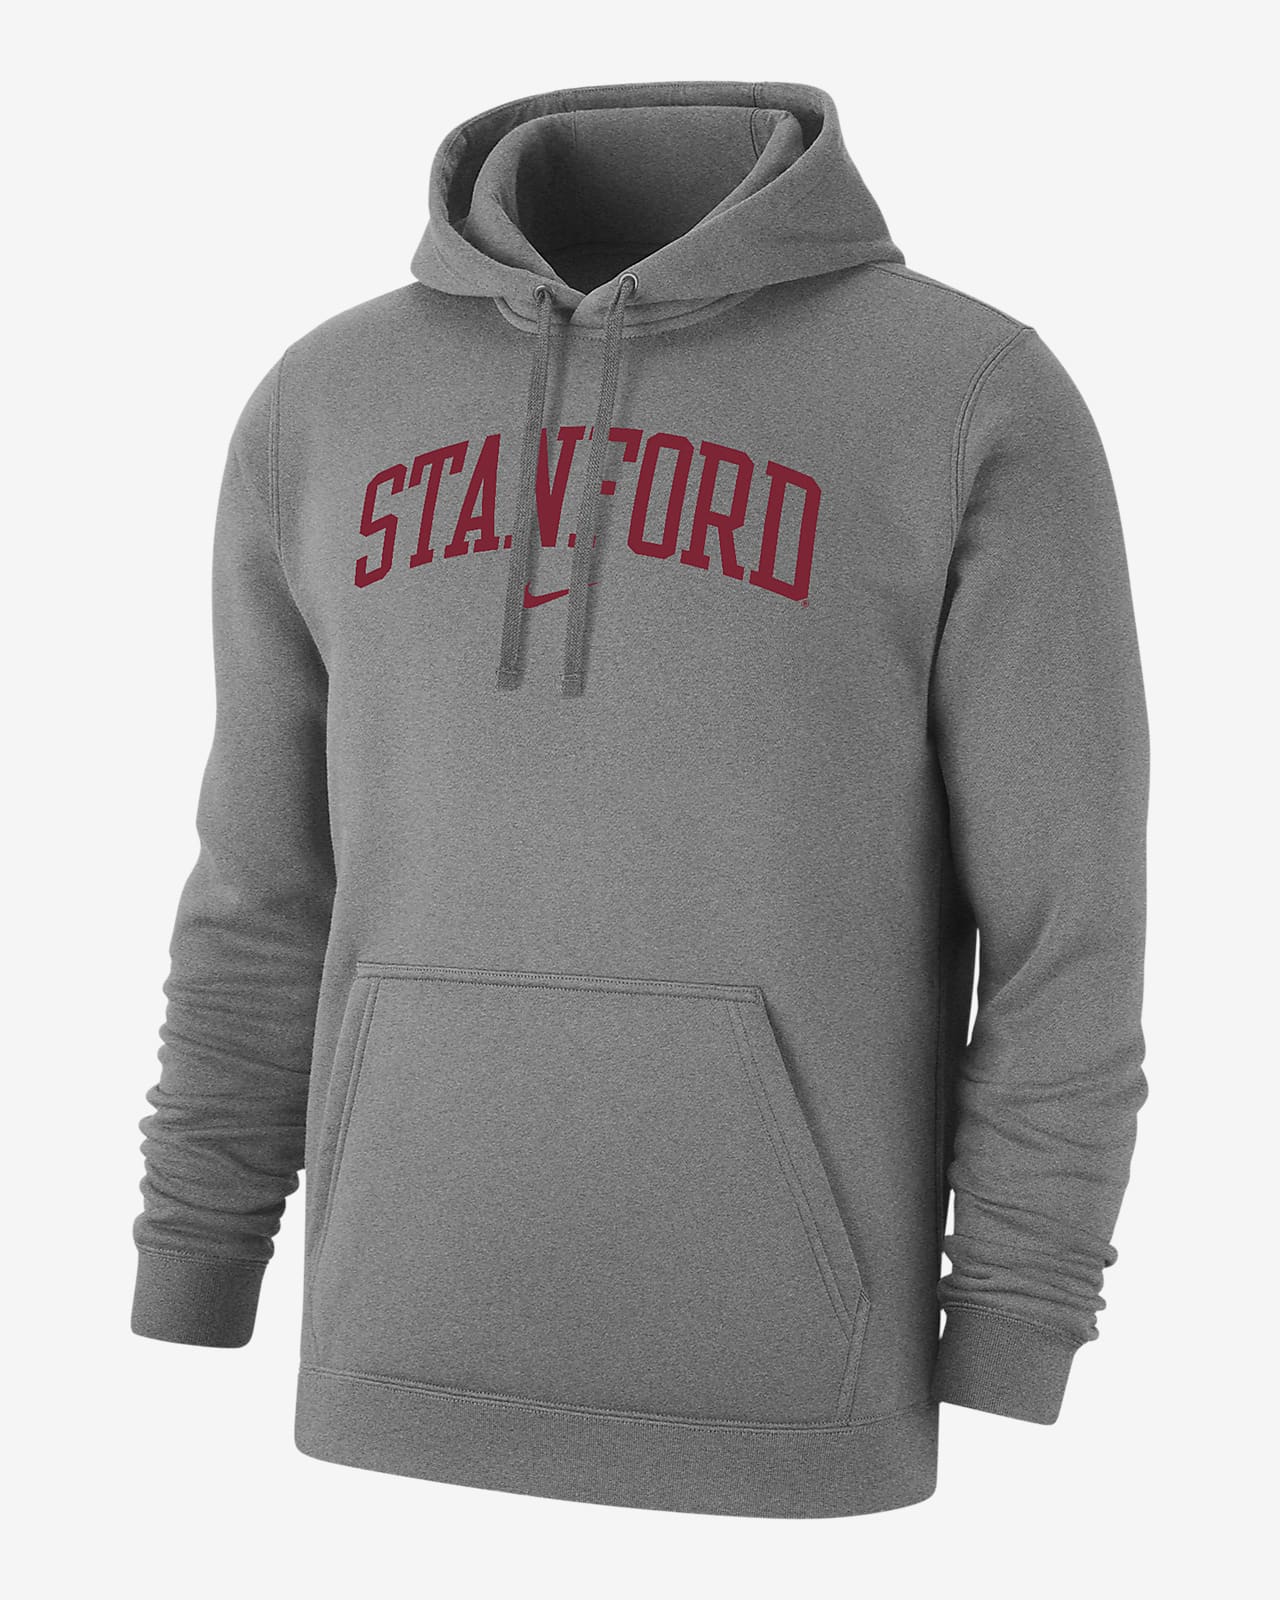 Stanford Club Fleece Men's Nike College Pullover Hoodie